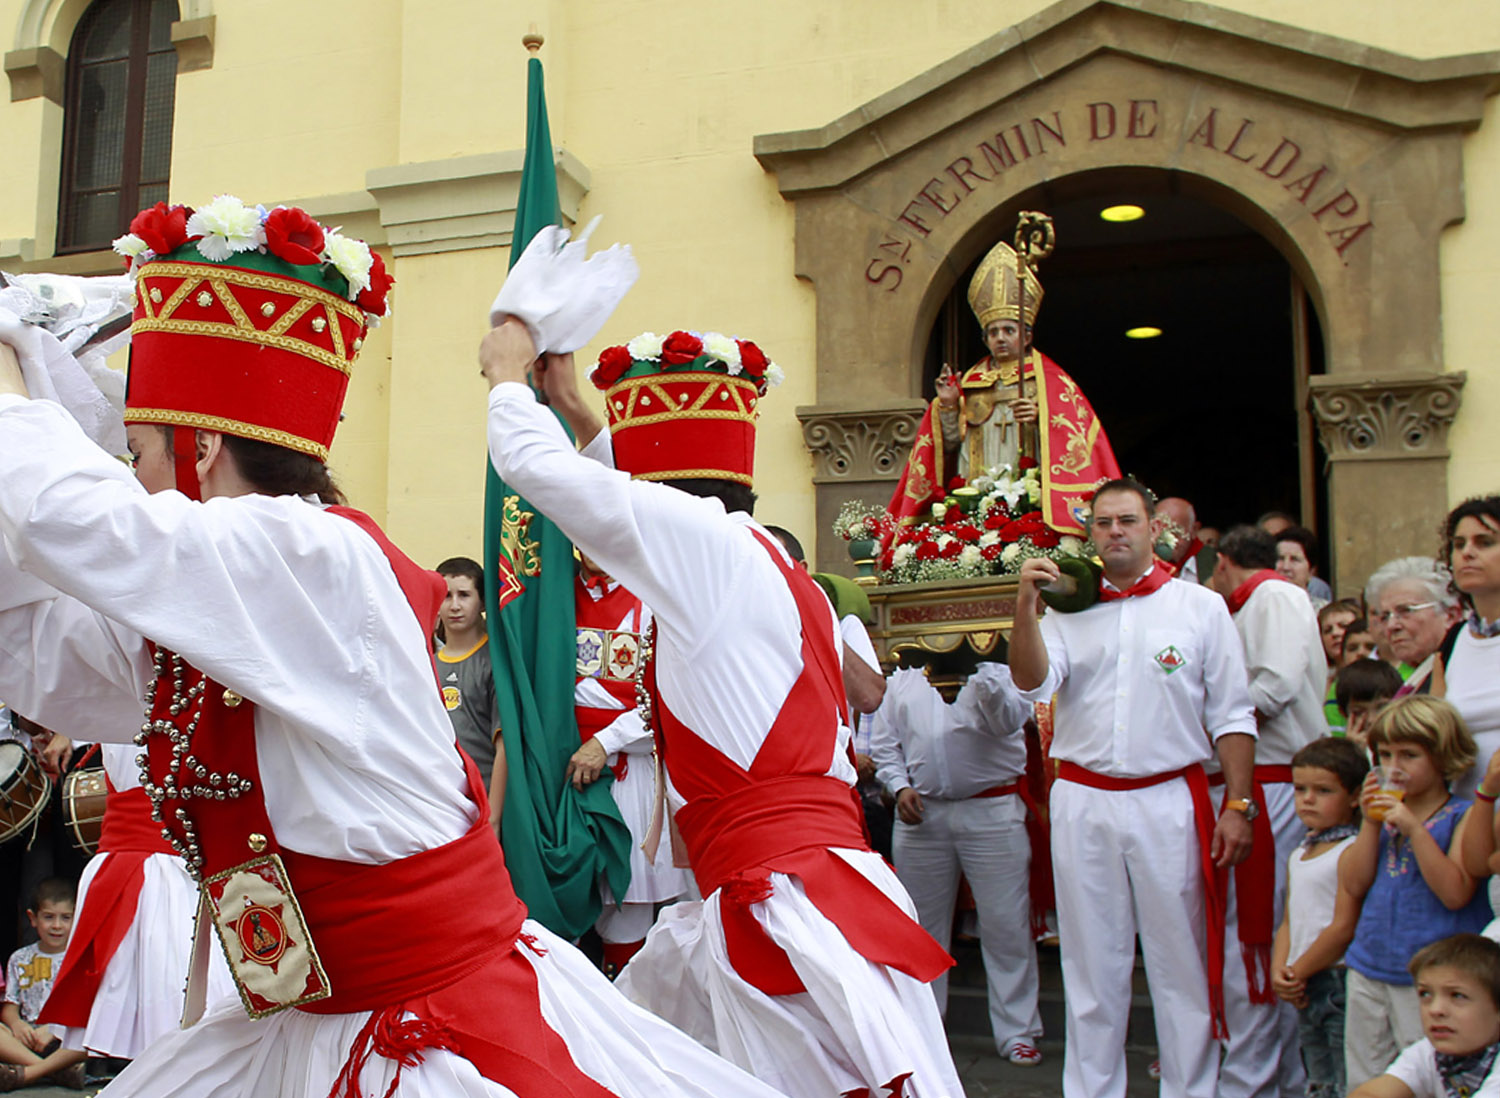 Dantzaris dansant à San Fermín devant l’église de San Fermín de Aldapa